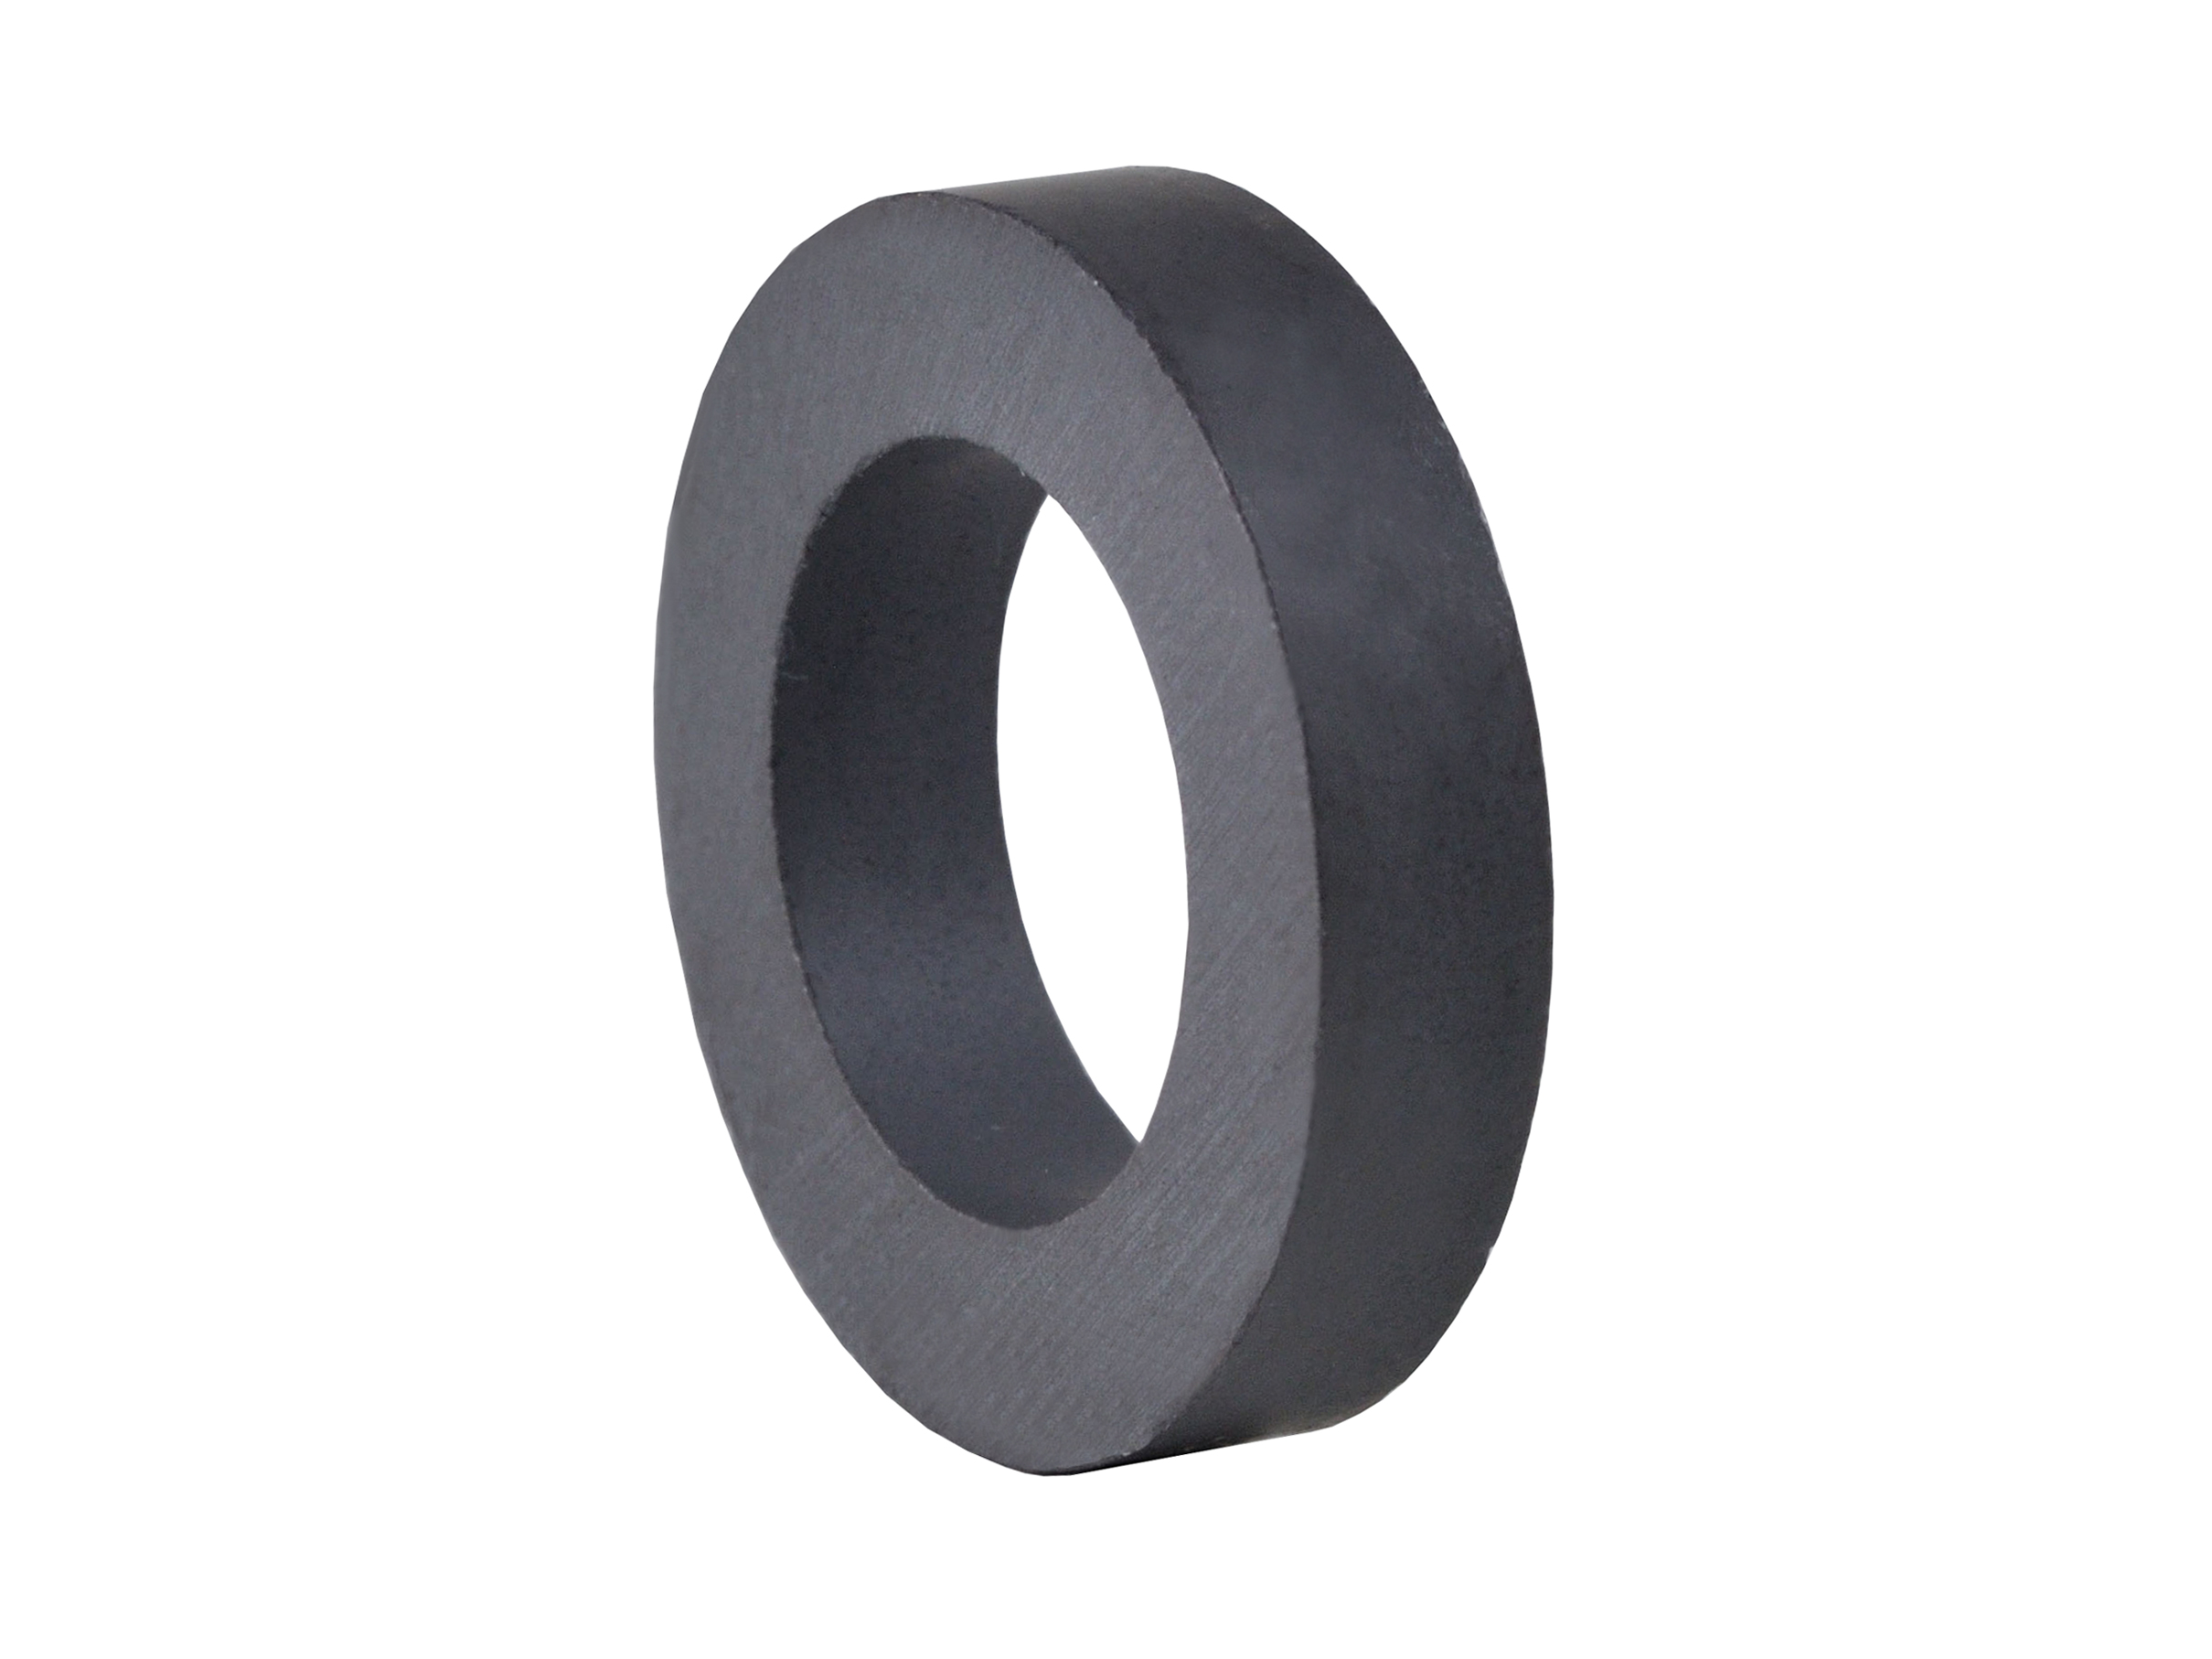 Ring‑Shaped Ferrite Magnet (FRR37) 